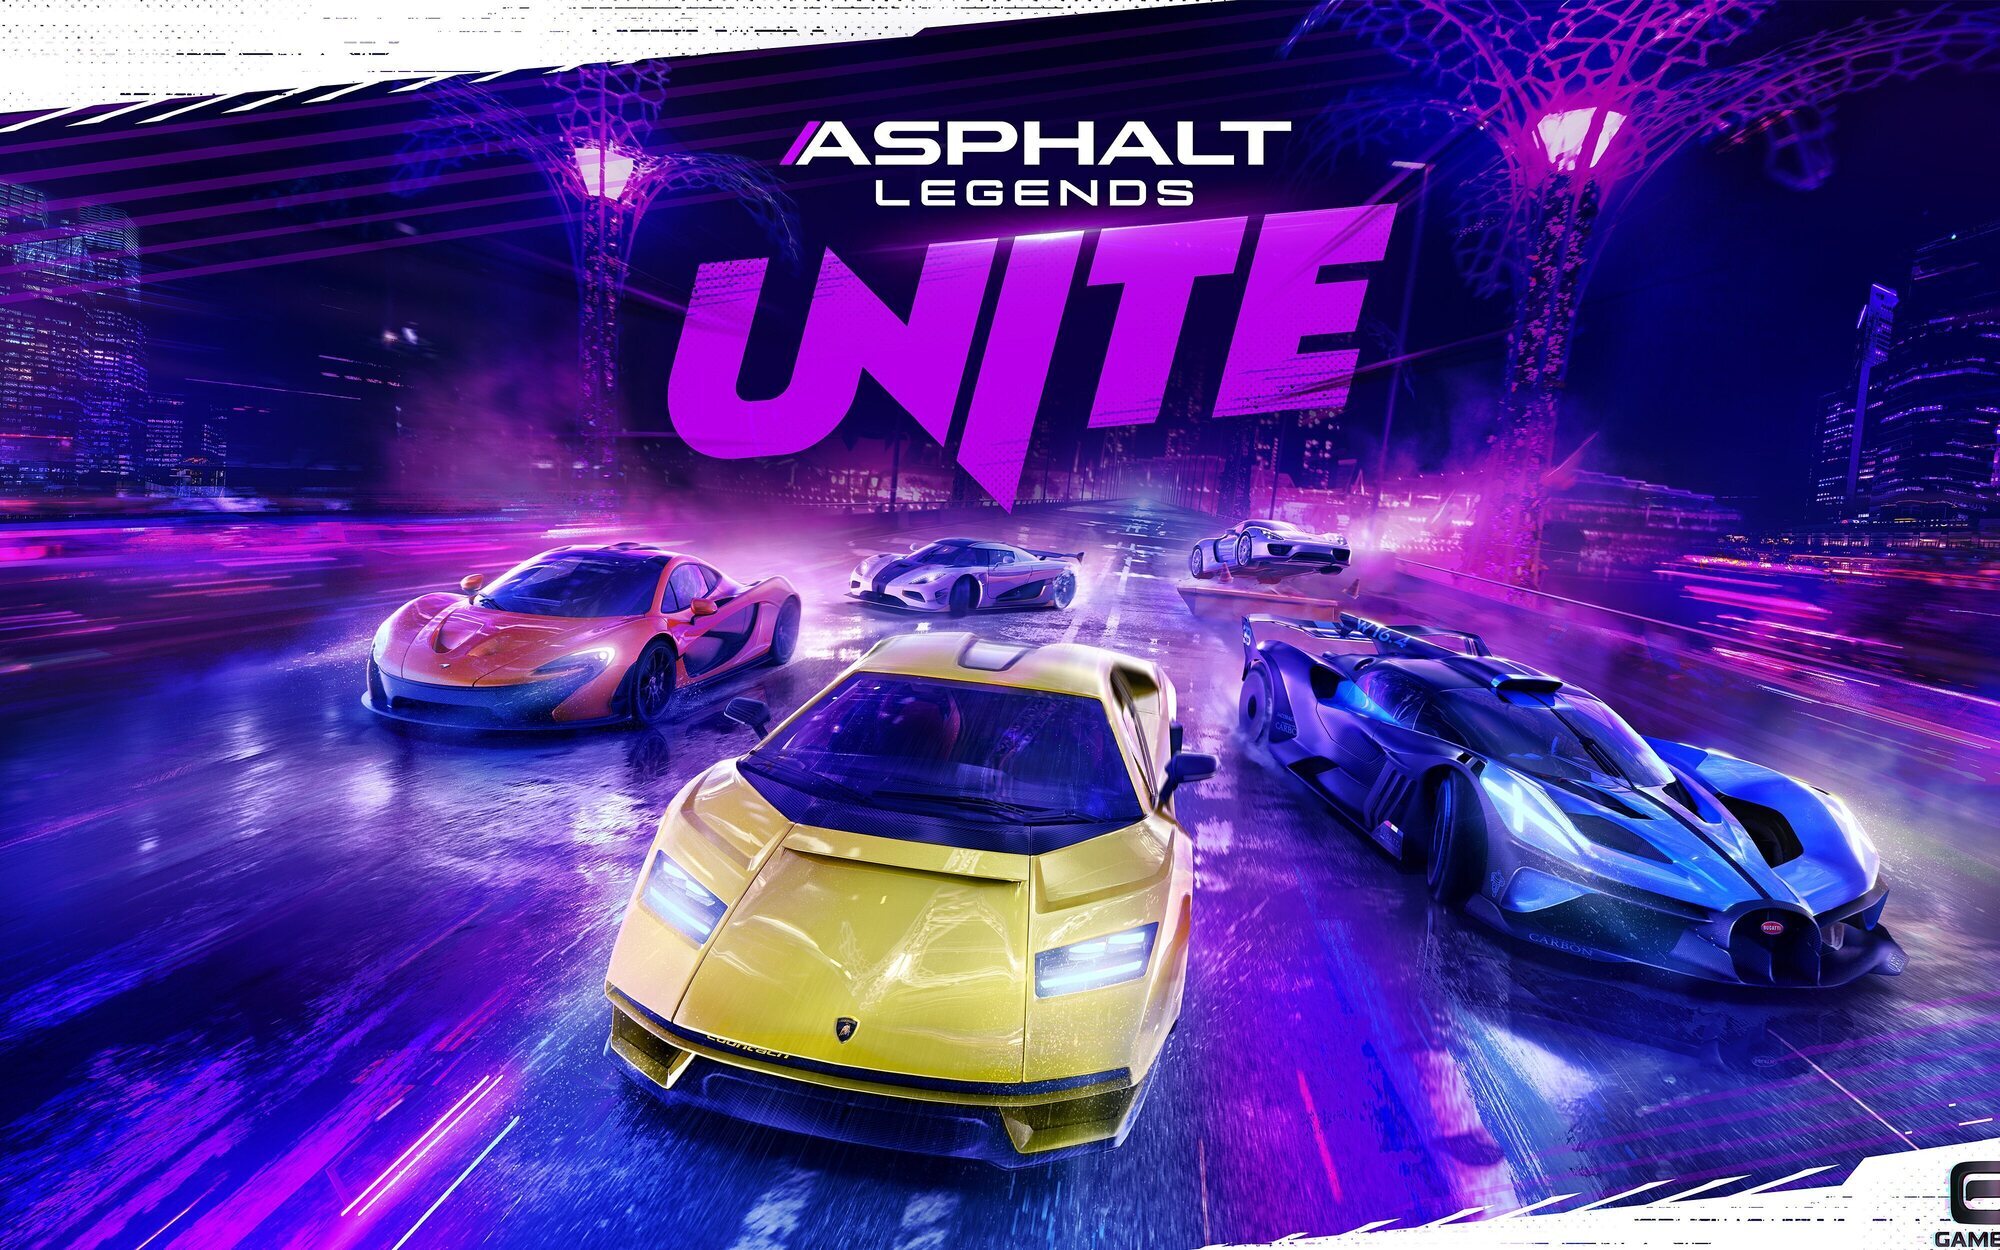 'Asphalt Legends Unite' llega este verano para PC, consolas y móviles